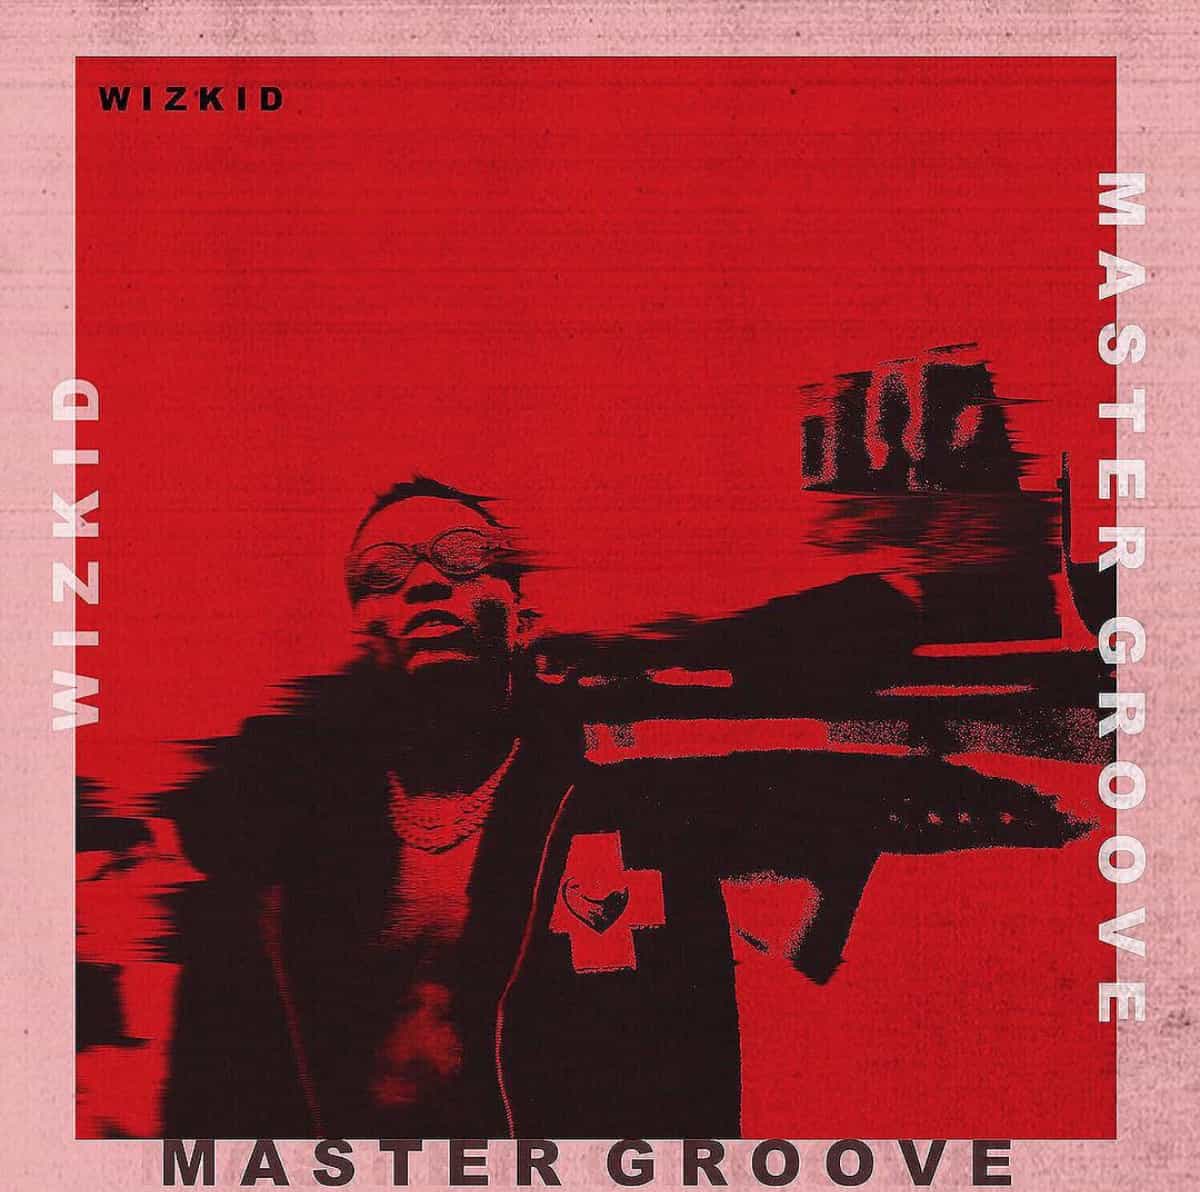 LYRICS: Wizkid - "Master Groove" Lyrics